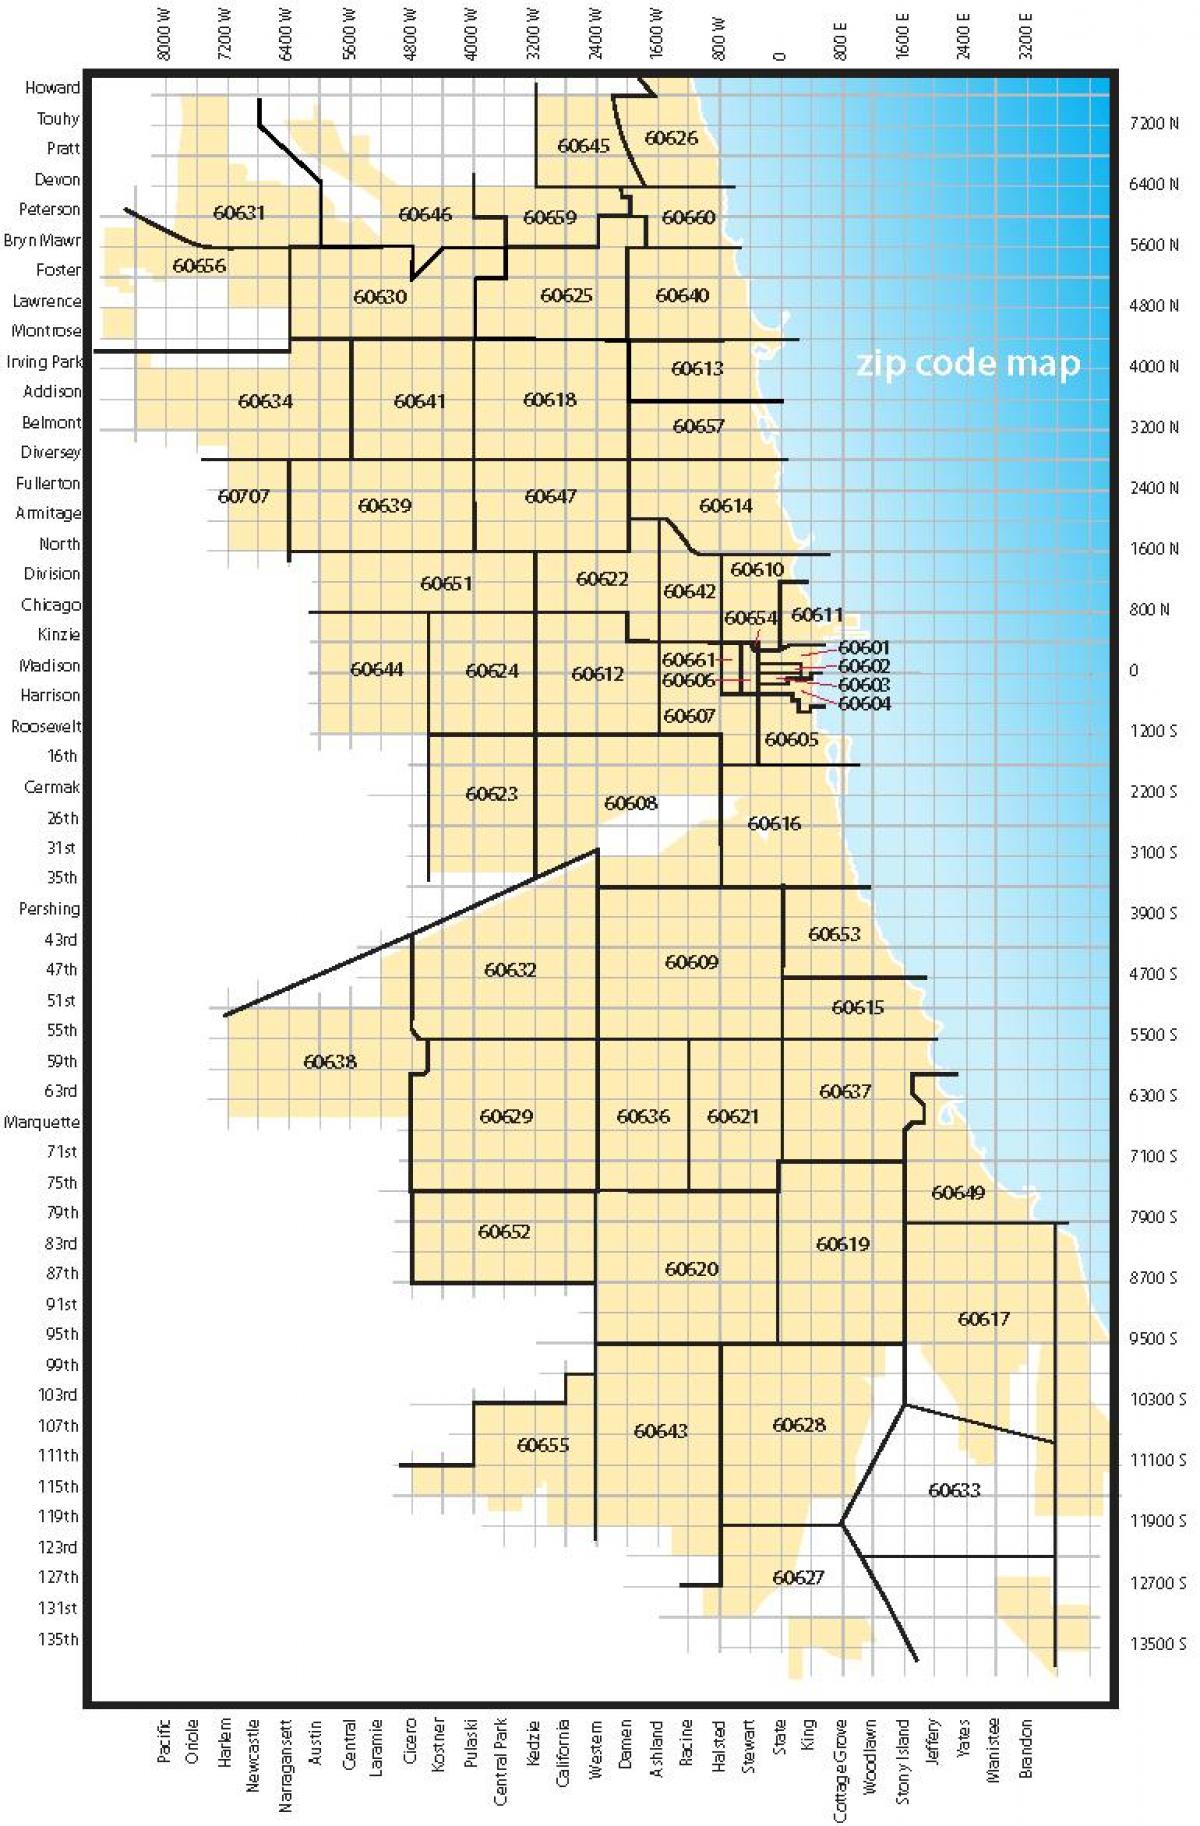 Chicago code térkép